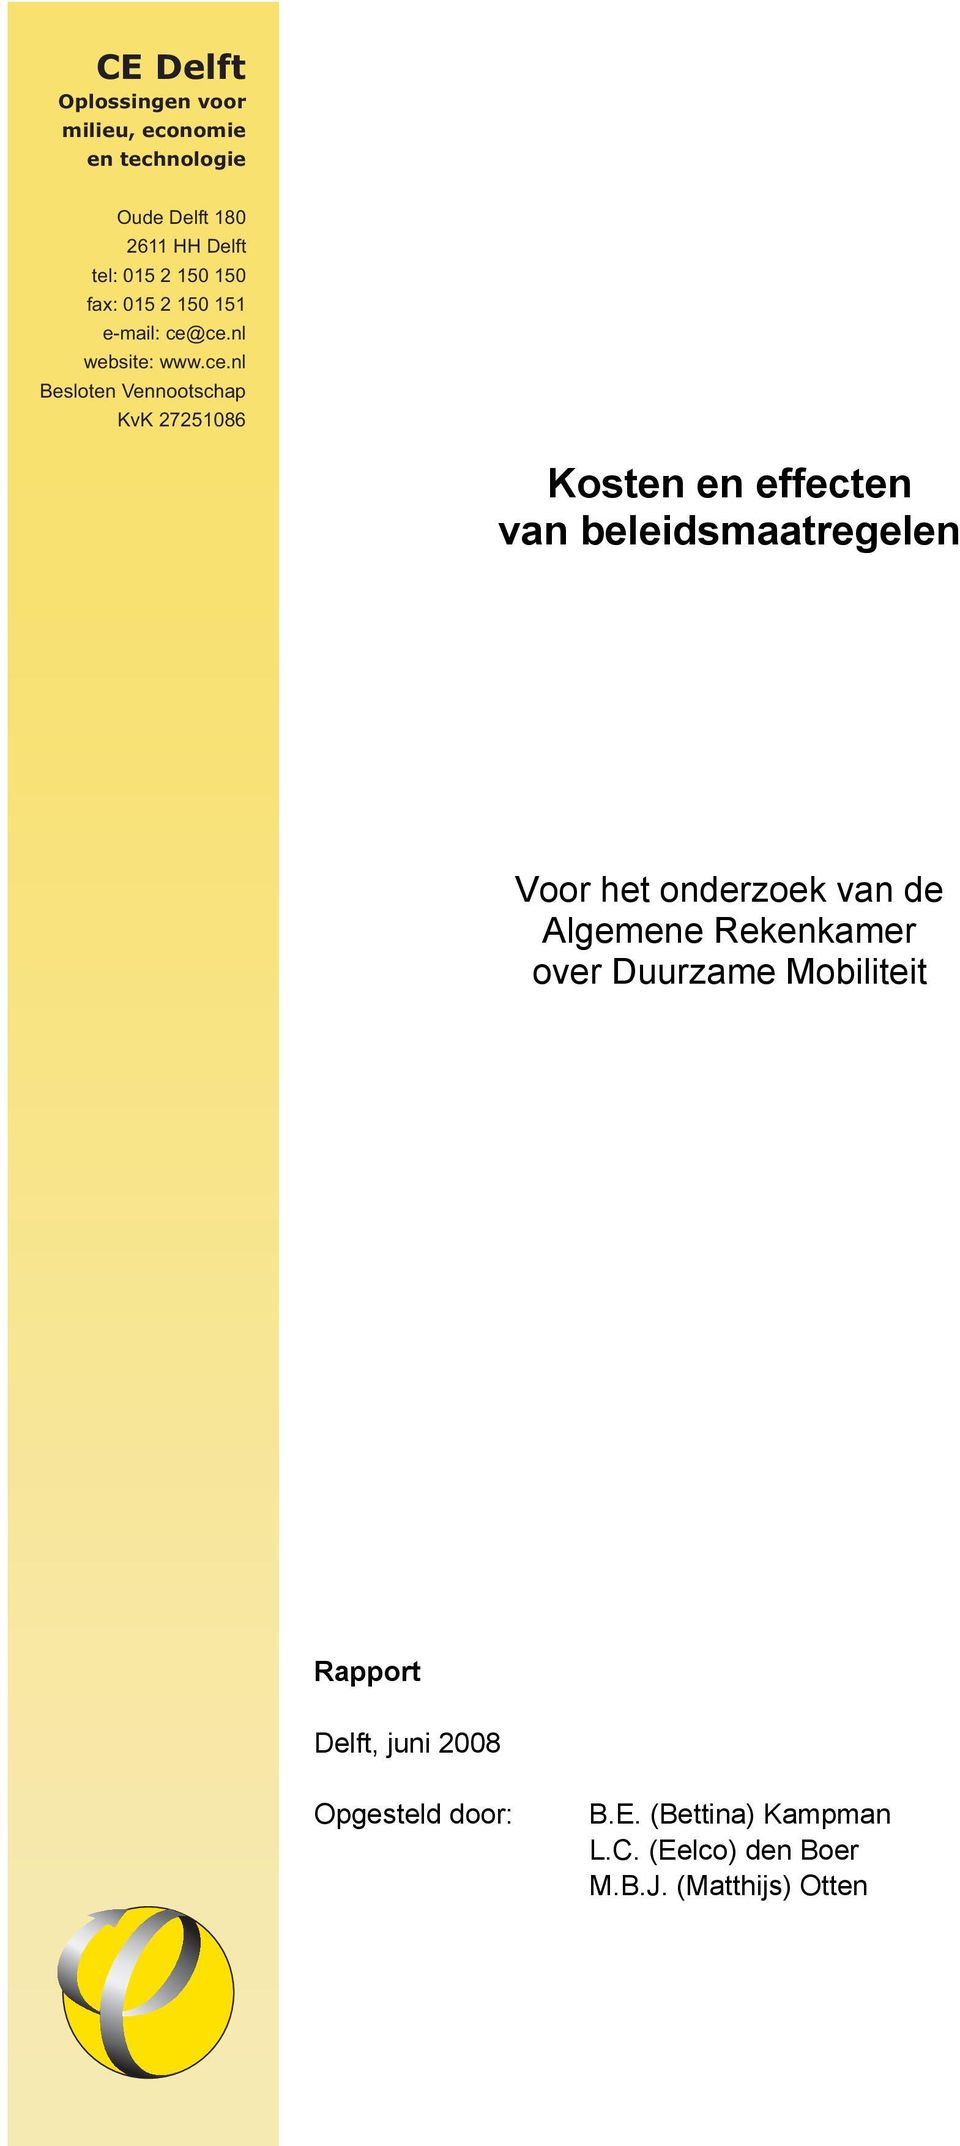 nl Besloten Vennootschap website: www.ce.